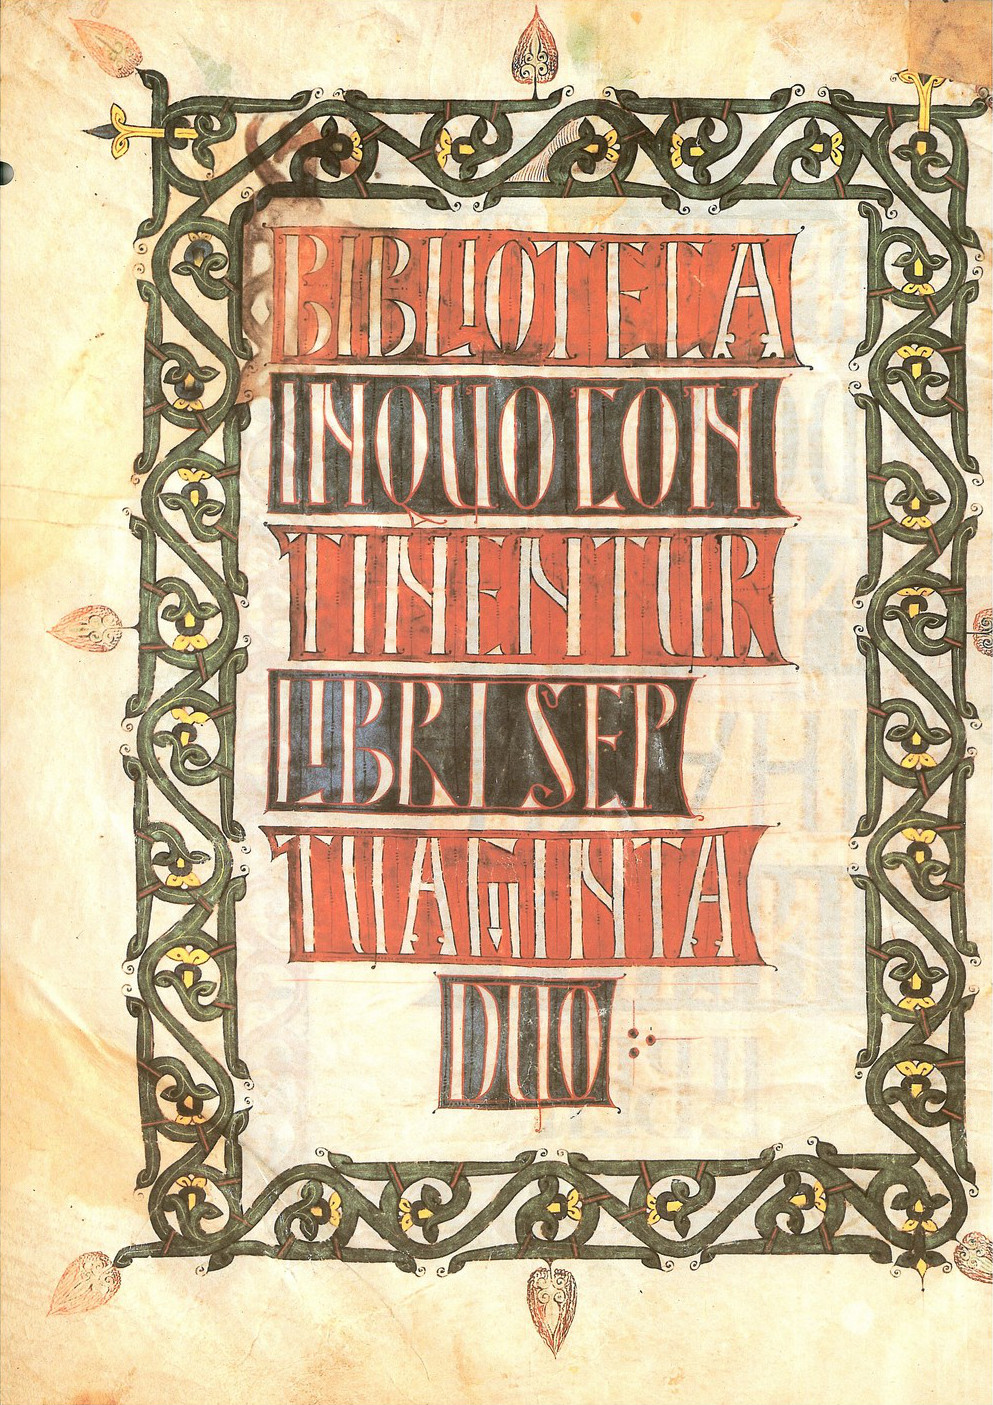 Codex Biblicus Legionensis – Les soixante-douze livres sont réunis dans ce codex.